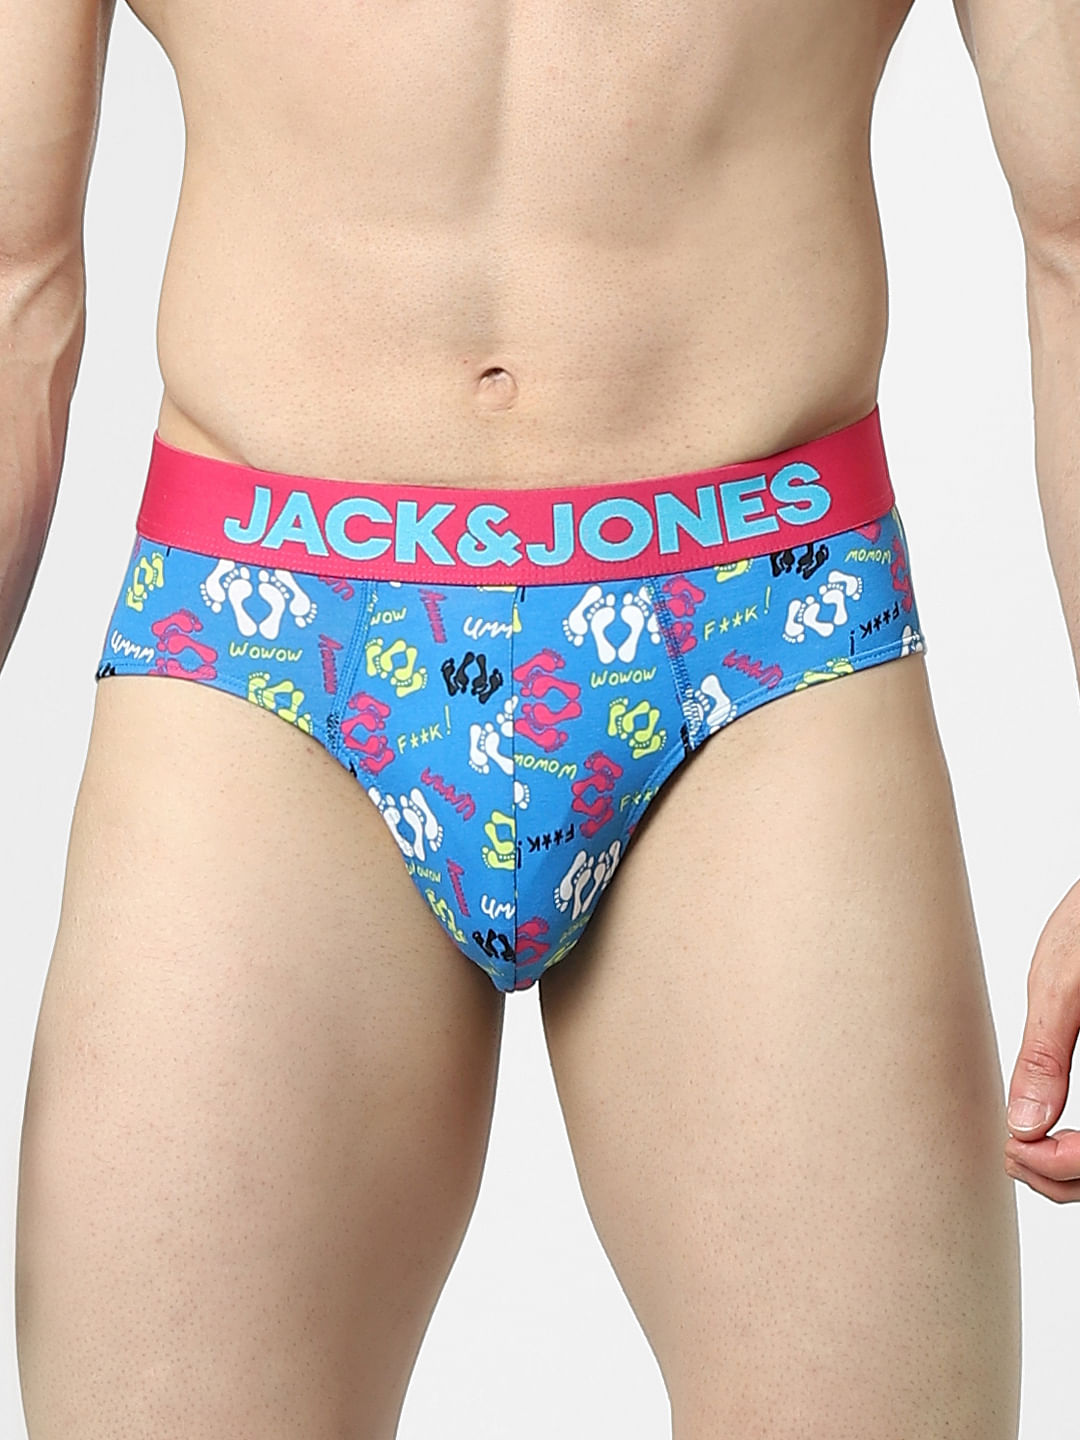 Jack & Jones Socks discount 57% MEN FASHION Underwear & Nightwear Red Single 